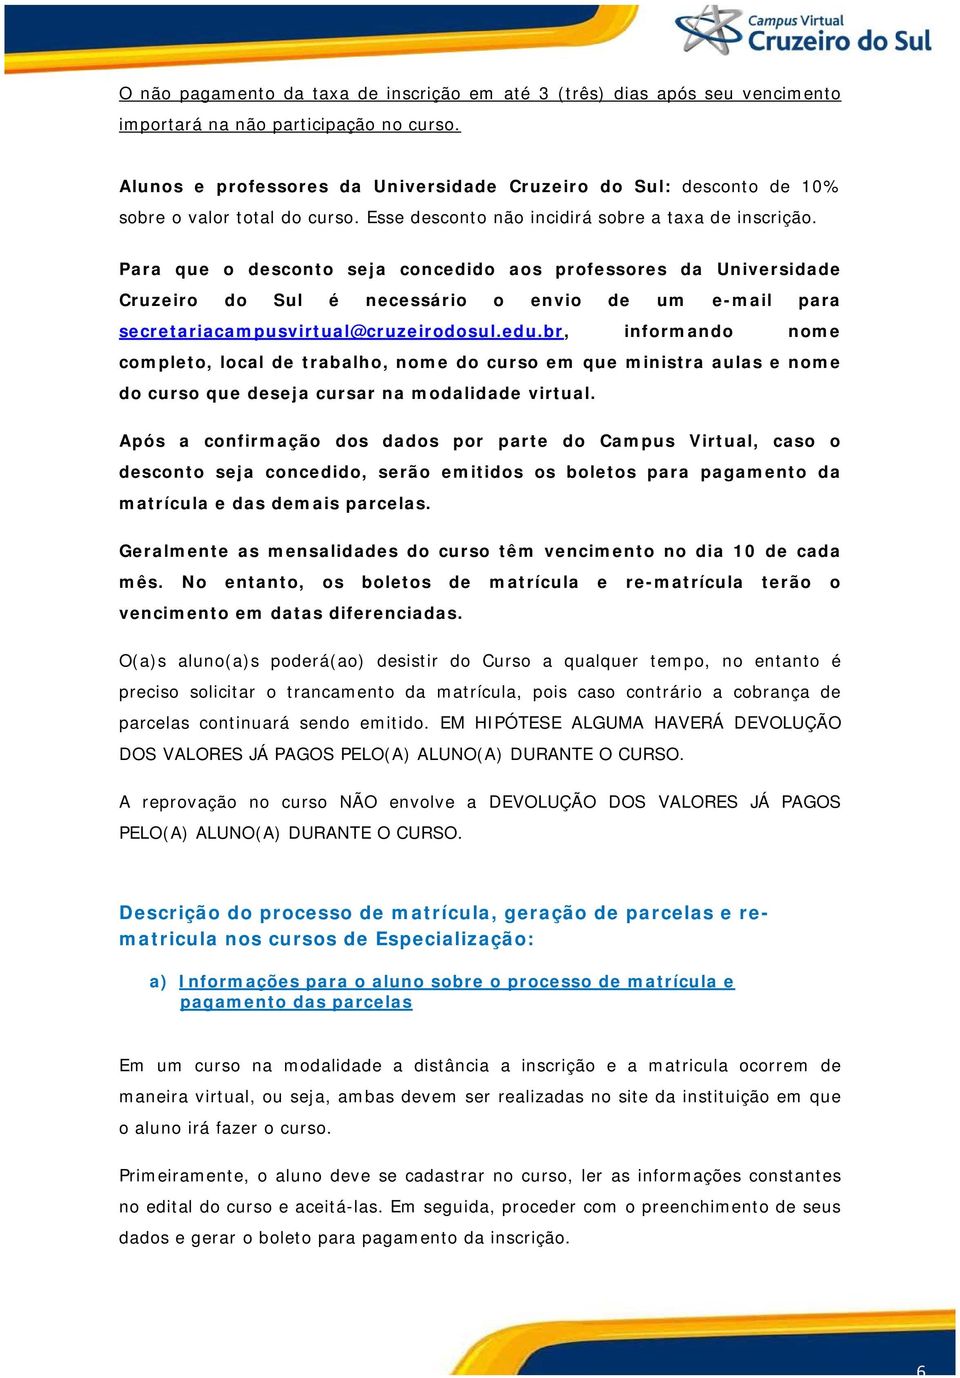 Para que o desconto seja concedido aos professores da Universidade Cruzeiro do Sul é necessário o envio de um e-mail para secretariacampusvirtual@cruzeirodosul.edu.